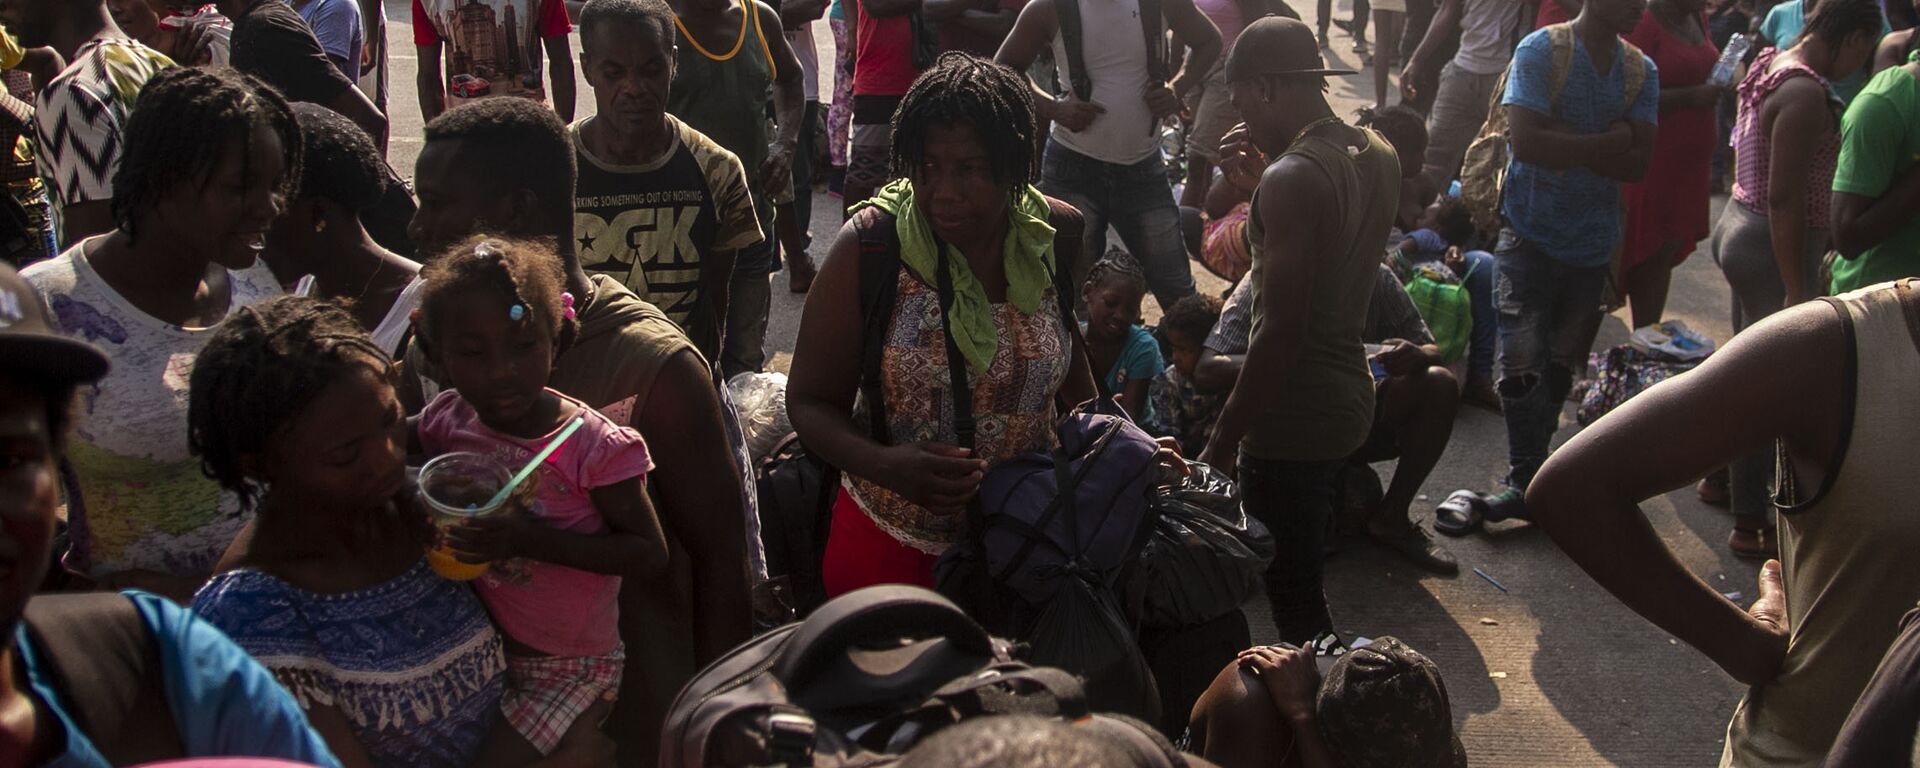 Tapachula, Chiapas: Cientos de migrantes, muchos de ellos haitianos, esperan que les resuelvan su situación migratoria en la estación Siglo XXI - Sputnik Mundo, 1920, 01.09.2021